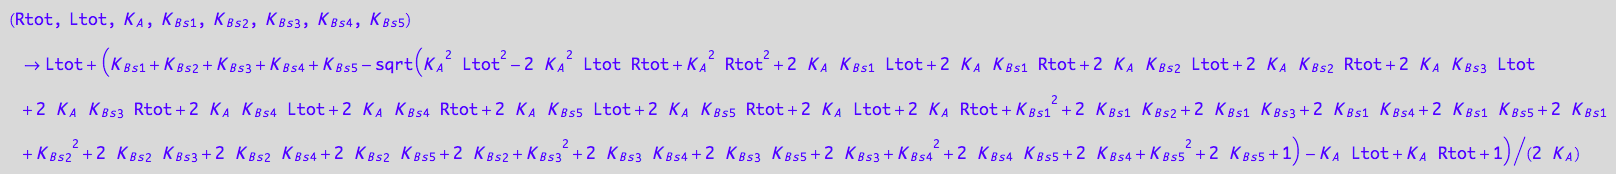 (Rtot, Ltot, K_A, K_B_s_1, K_B_s_2, K_B_s_3, K_B_s_4, K_B_s_5) -> Ltot + (K_B_s_1 + K_B_s_2 + K_B_s_3 + K_B_s_4 + K_B_s_5 - (K_A^2*Ltot^2 - 2*K_A^2*Ltot*Rtot + K_A^2*Rtot^2 + 2*K_A*K_B_s_1*Ltot + 2*K_A*K_B_s_1*Rtot + 2*K_A*K_B_s_2*Ltot + 2*K_A*K_B_s_2*Rtot + 2*K_A*K_B_s_3*Ltot + 2*K_A*K_B_s_3*Rtot + 2*K_A*K_B_s_4*Ltot + 2*K_A*K_B_s_4*Rtot + 2*K_A*K_B_s_5*Ltot + 2*K_A*K_B_s_5*Rtot + 2*K_A*Ltot + 2*K_A*Rtot + K_B_s_1^2 + 2*K_B_s_1*K_B_s_2 + 2*K_B_s_1*K_B_s_3 + 2*K_B_s_1*K_B_s_4 + 2*K_B_s_1*K_B_s_5 + 2*K_B_s_1 + K_B_s_2^2 + 2*K_B_s_2*K_B_s_3 + 2*K_B_s_2*K_B_s_4 + 2*K_B_s_2*K_B_s_5 + 2*K_B_s_2 + K_B_s_3^2 + 2*K_B_s_3*K_B_s_4 + 2*K_B_s_3*K_B_s_5 + 2*K_B_s_3 + K_B_s_4^2 + 2*K_B_s_4*K_B_s_5 + 2*K_B_s_4 + K_B_s_5^2 + 2*K_B_s_5 + 1)^(1/2) - K_A*Ltot + K_A*Rtot + 1)/(2*K_A)